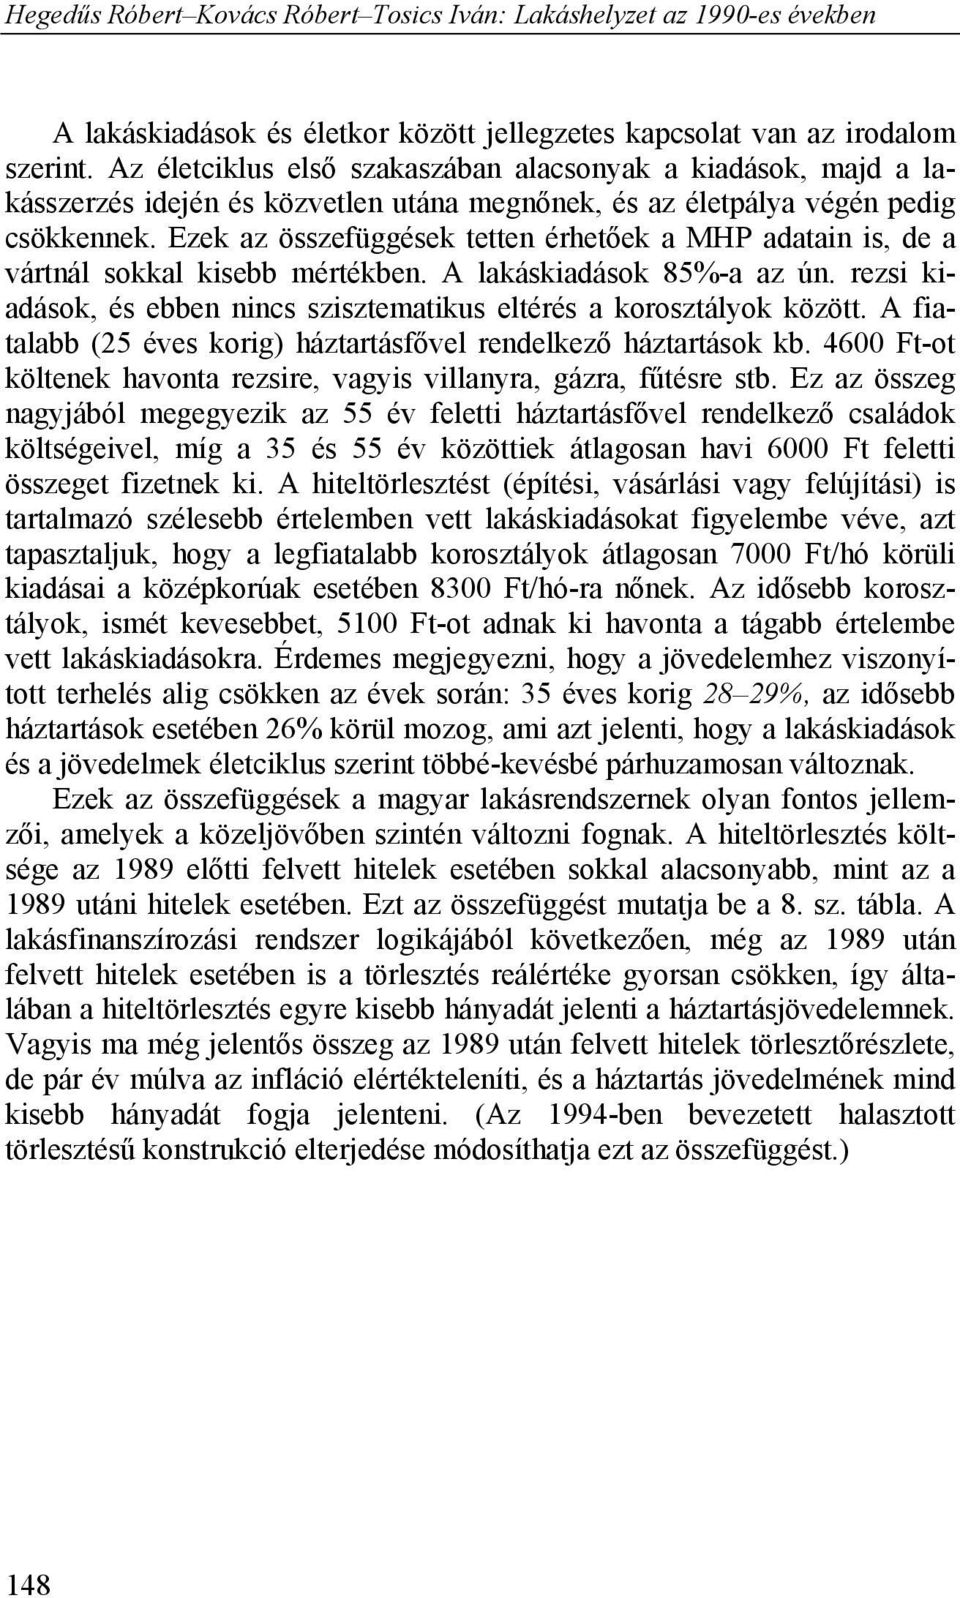 Hegedűs Róbert Kovács Róbert Tosics Iván: Lakáshelyzet az 1990-es években -  PDF Free Download